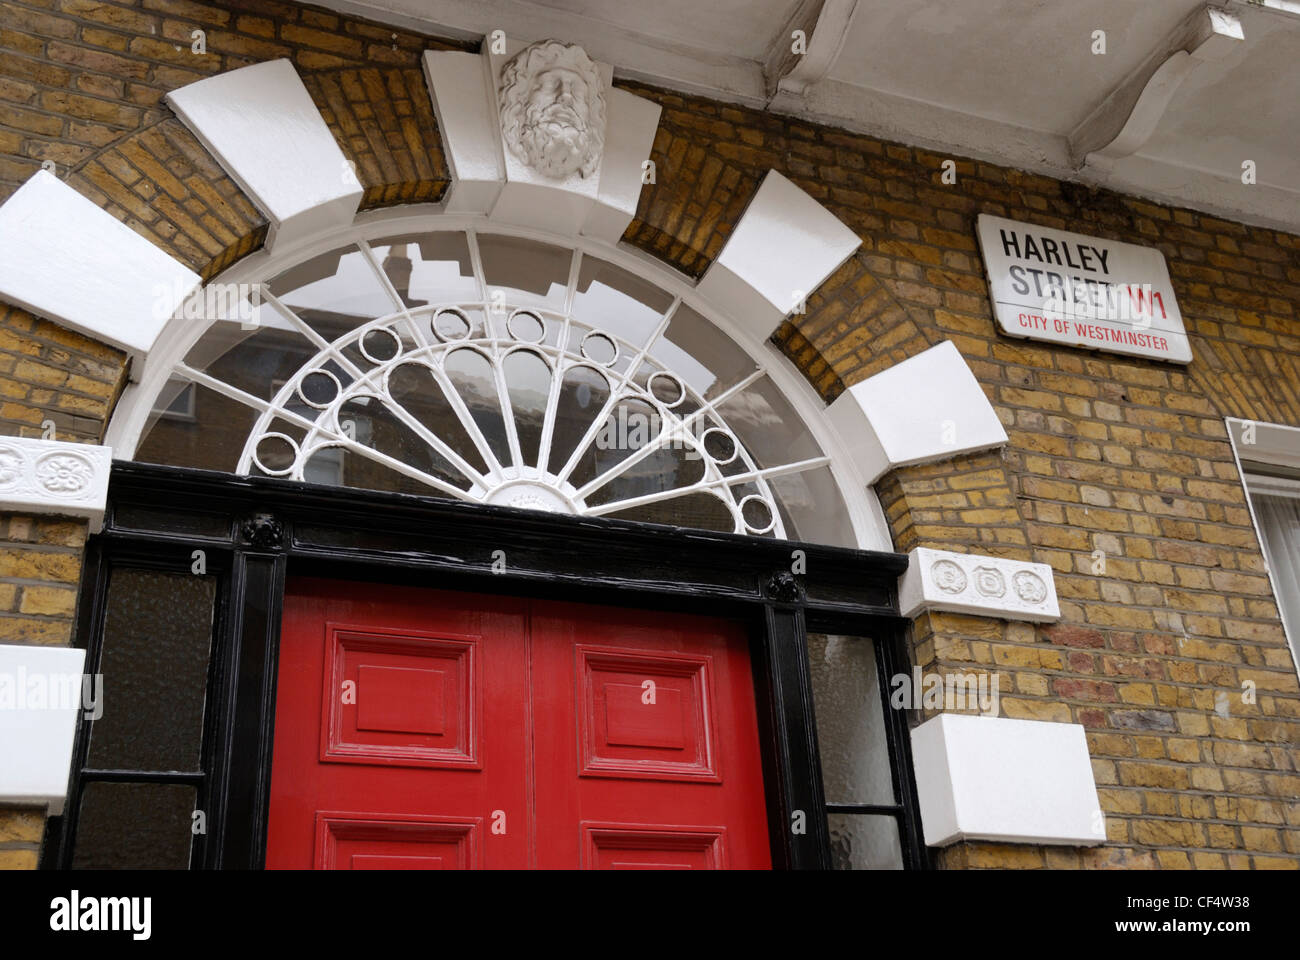 Eintritt in eine private Arztpraxis in der Harley Street, einer der berühmtesten Straßen in London. Stockfoto